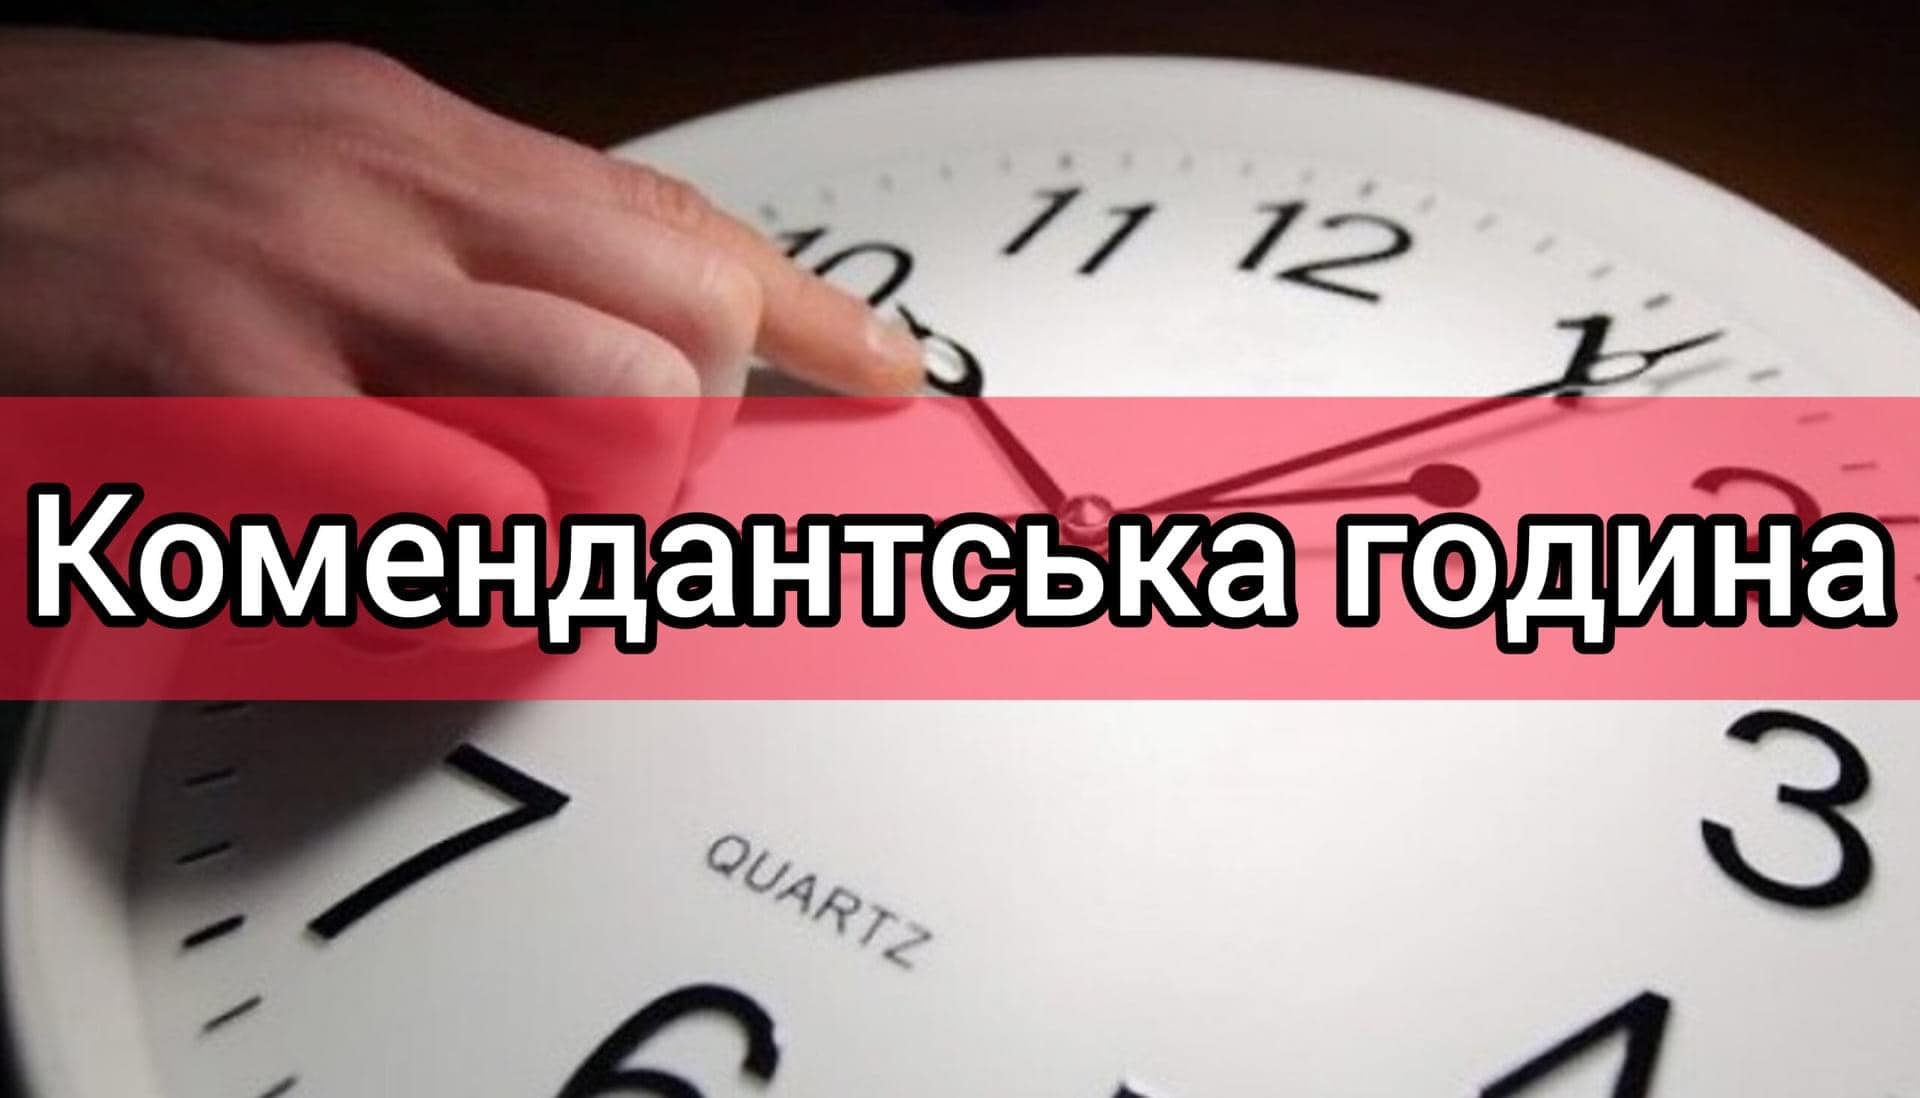 З 1 грудня комендантська година на Миколаївщині, окрім декількох громад, буде з 00:00 до 05:00 (ДОКУМЕНТ) 20